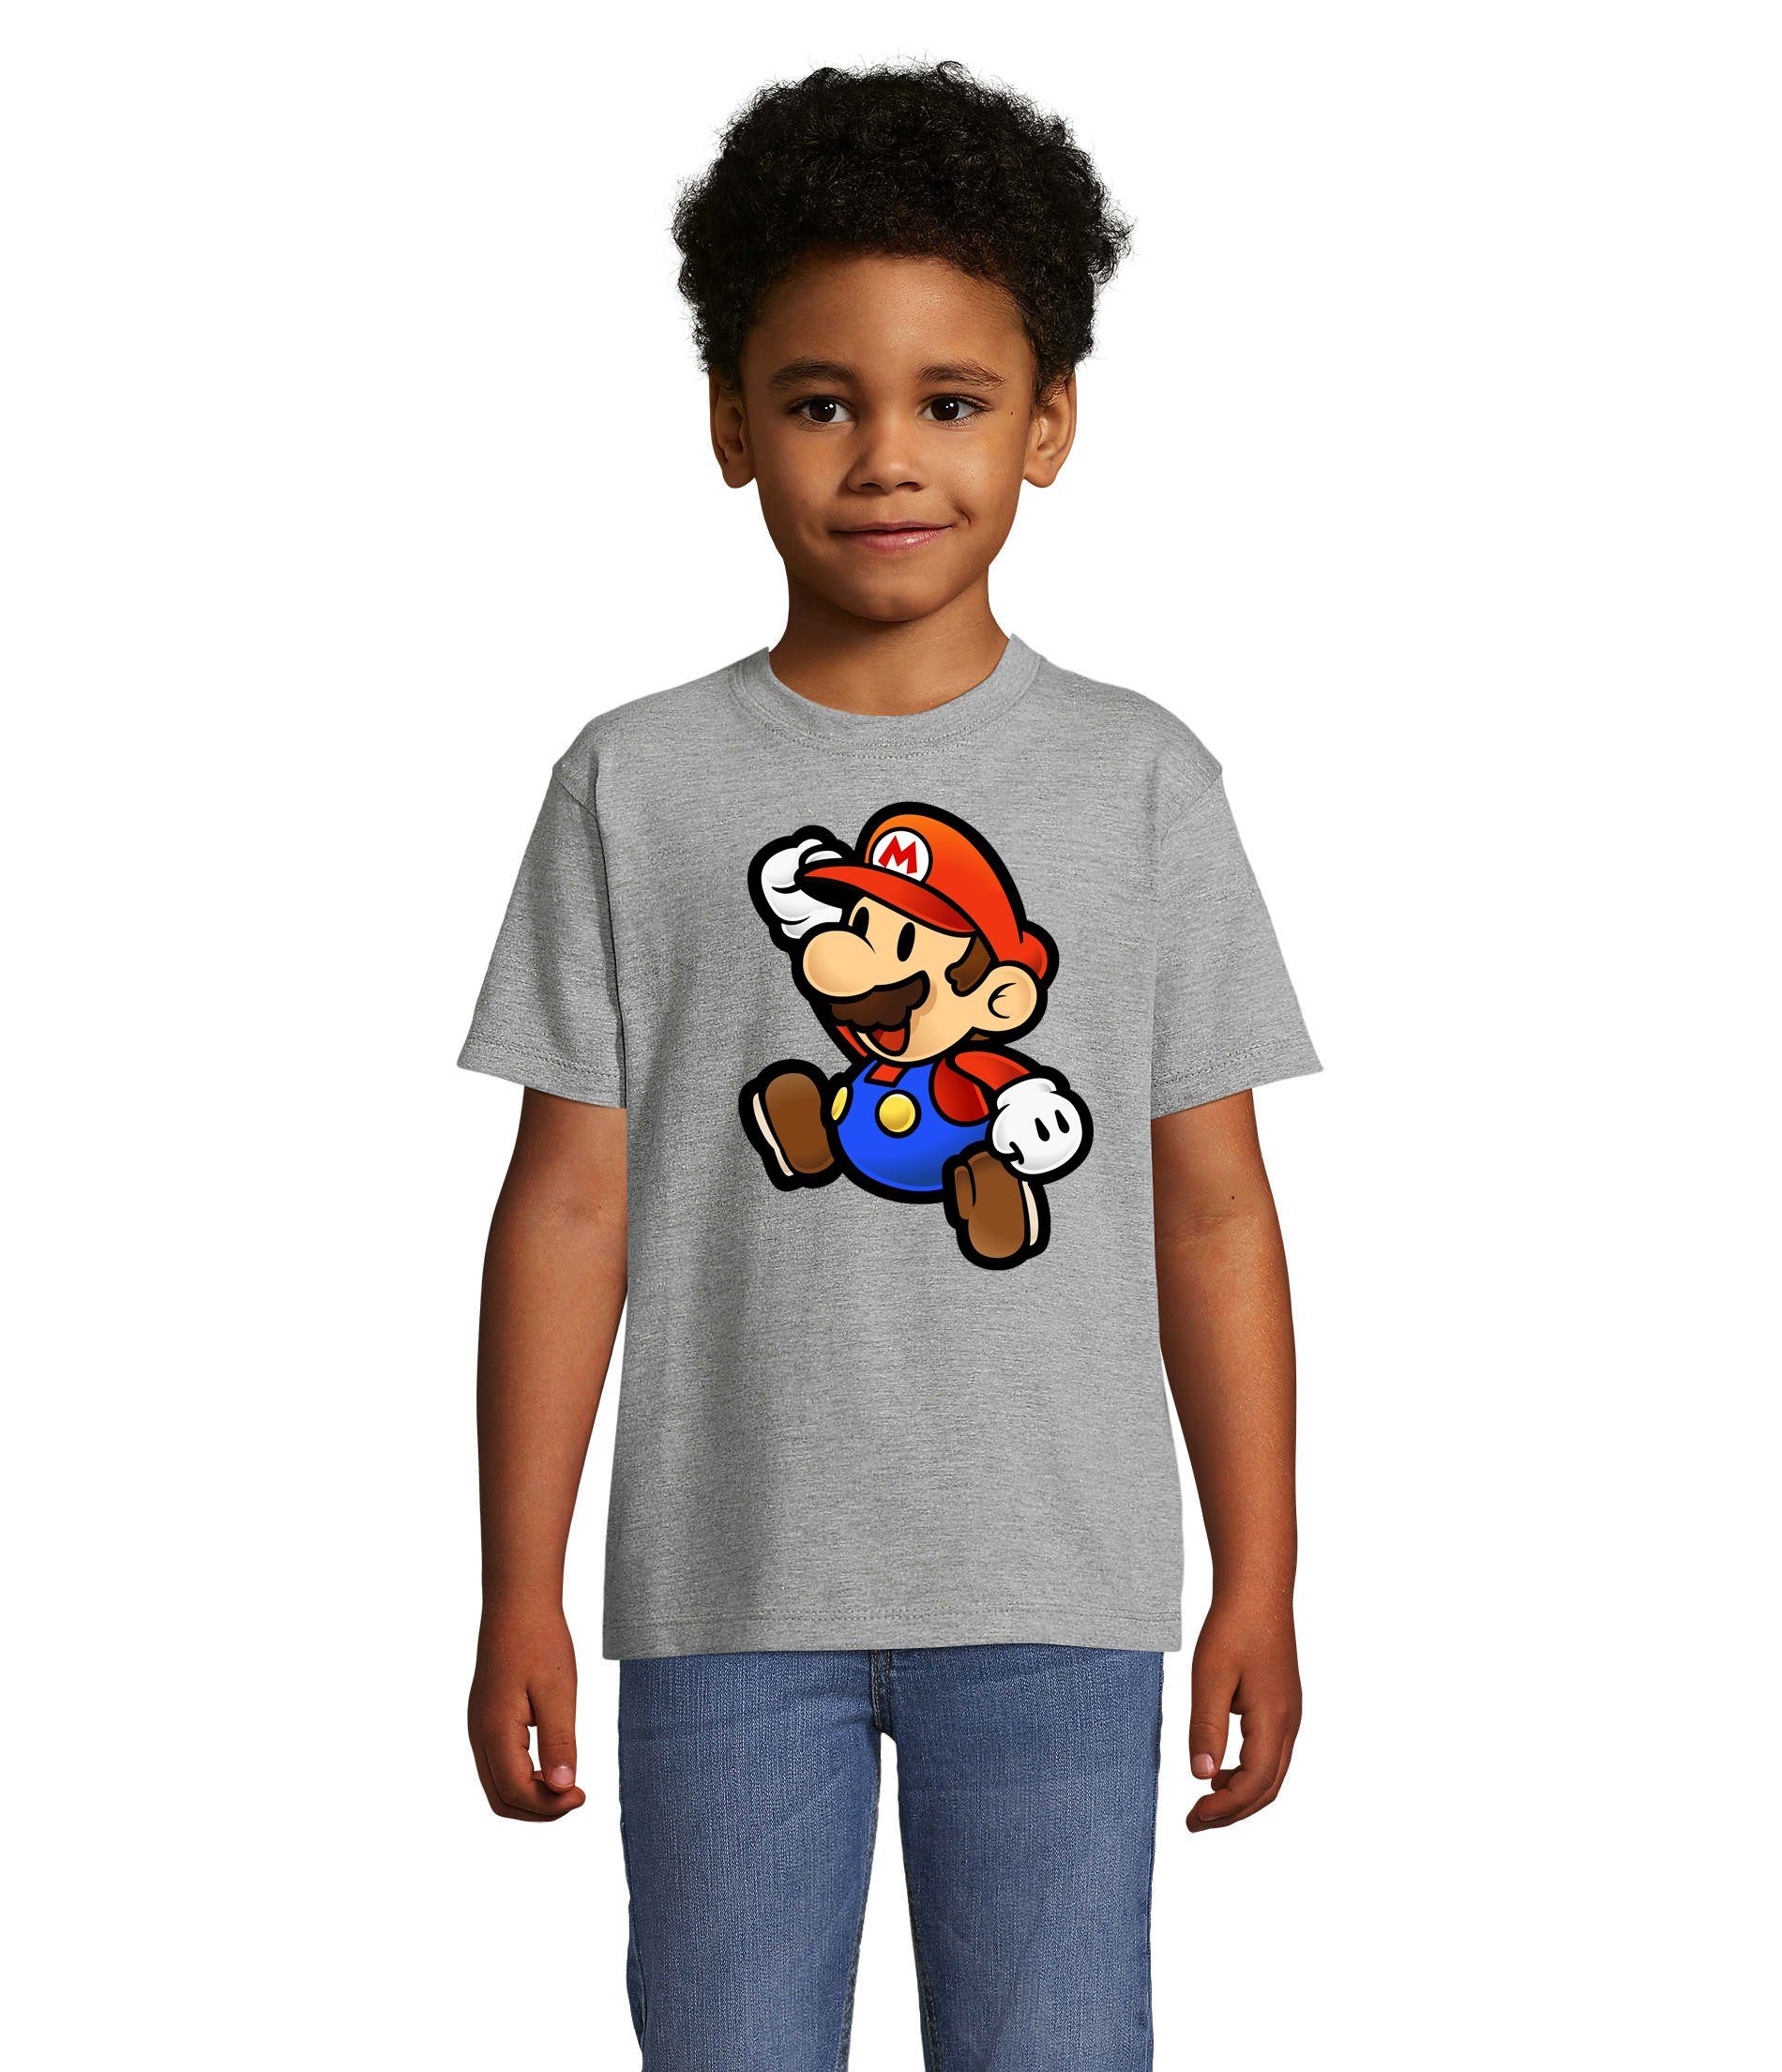 Gaming & Jungen & Mario Brownie in vielen Nintendo Mädchen Farben Yoshi Super Kinder T-Shirt Luigi Blondie Grau